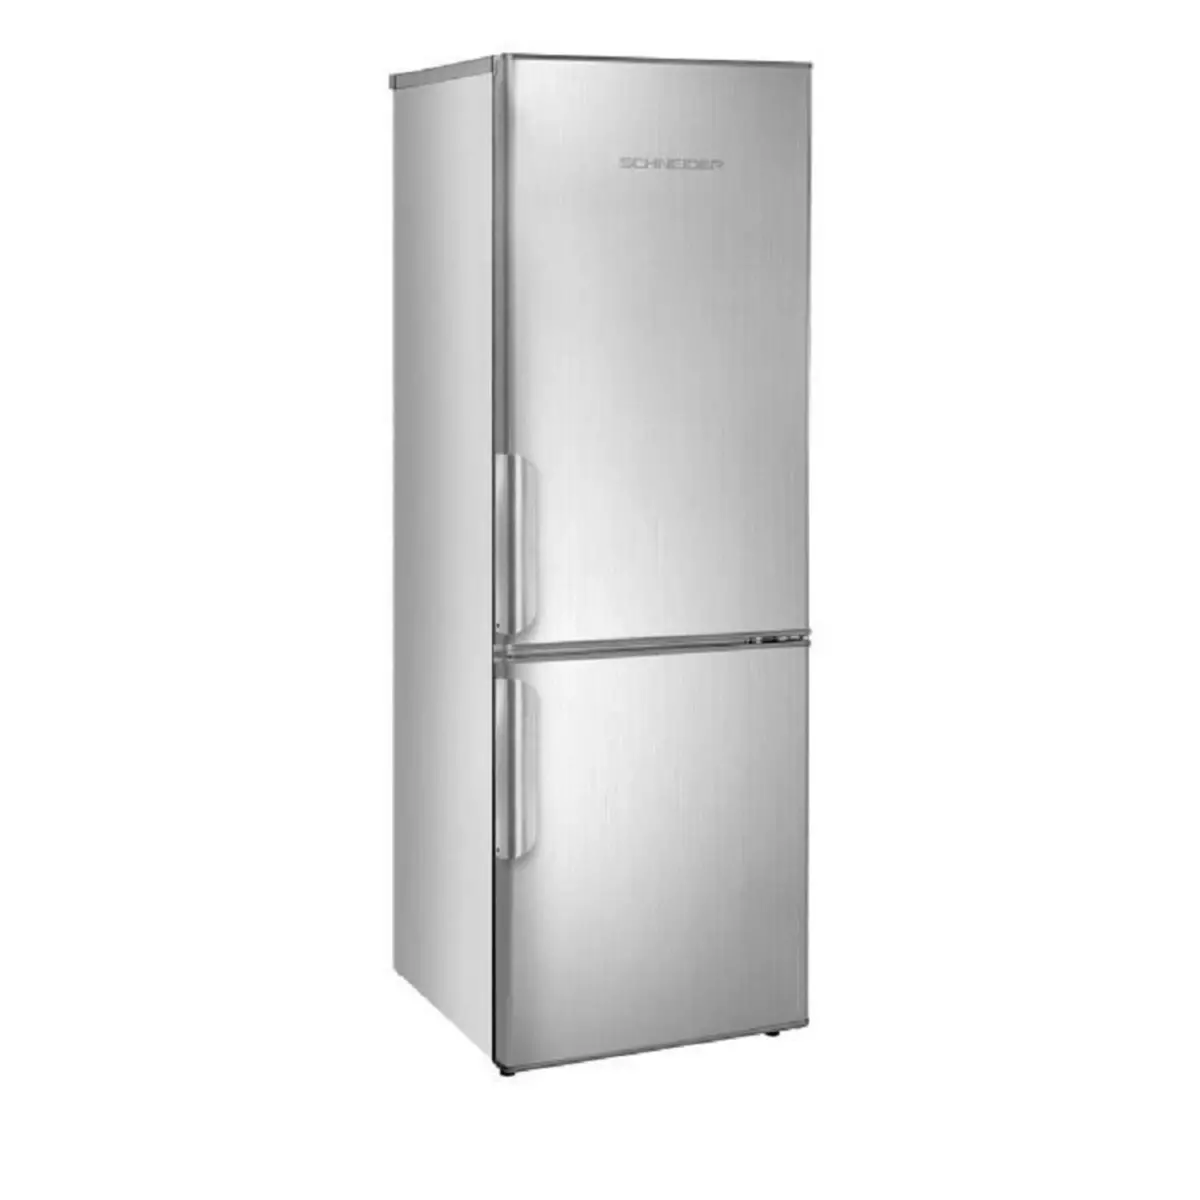 SCHNEIDER Réfrigérateur combiné SCB250IX, 250 L, Froid Statique